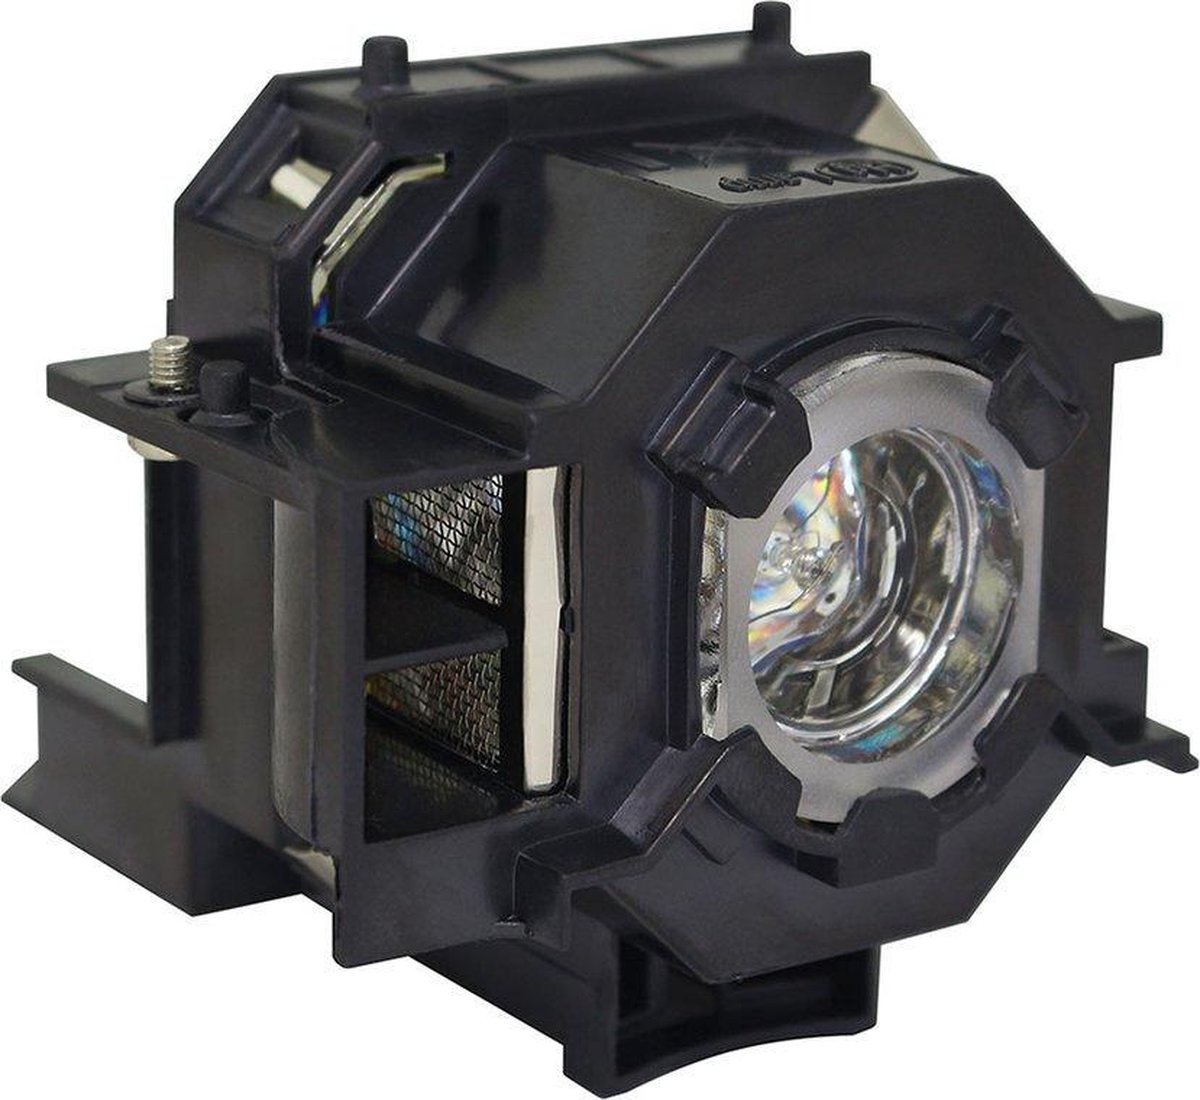 Beamerlamp geschikt voor de EPSON EB-TW420 beamer, lamp code LP41 / V13H010L41. Bevat originele P-VIP lamp, prestaties gelijk aan origineel.